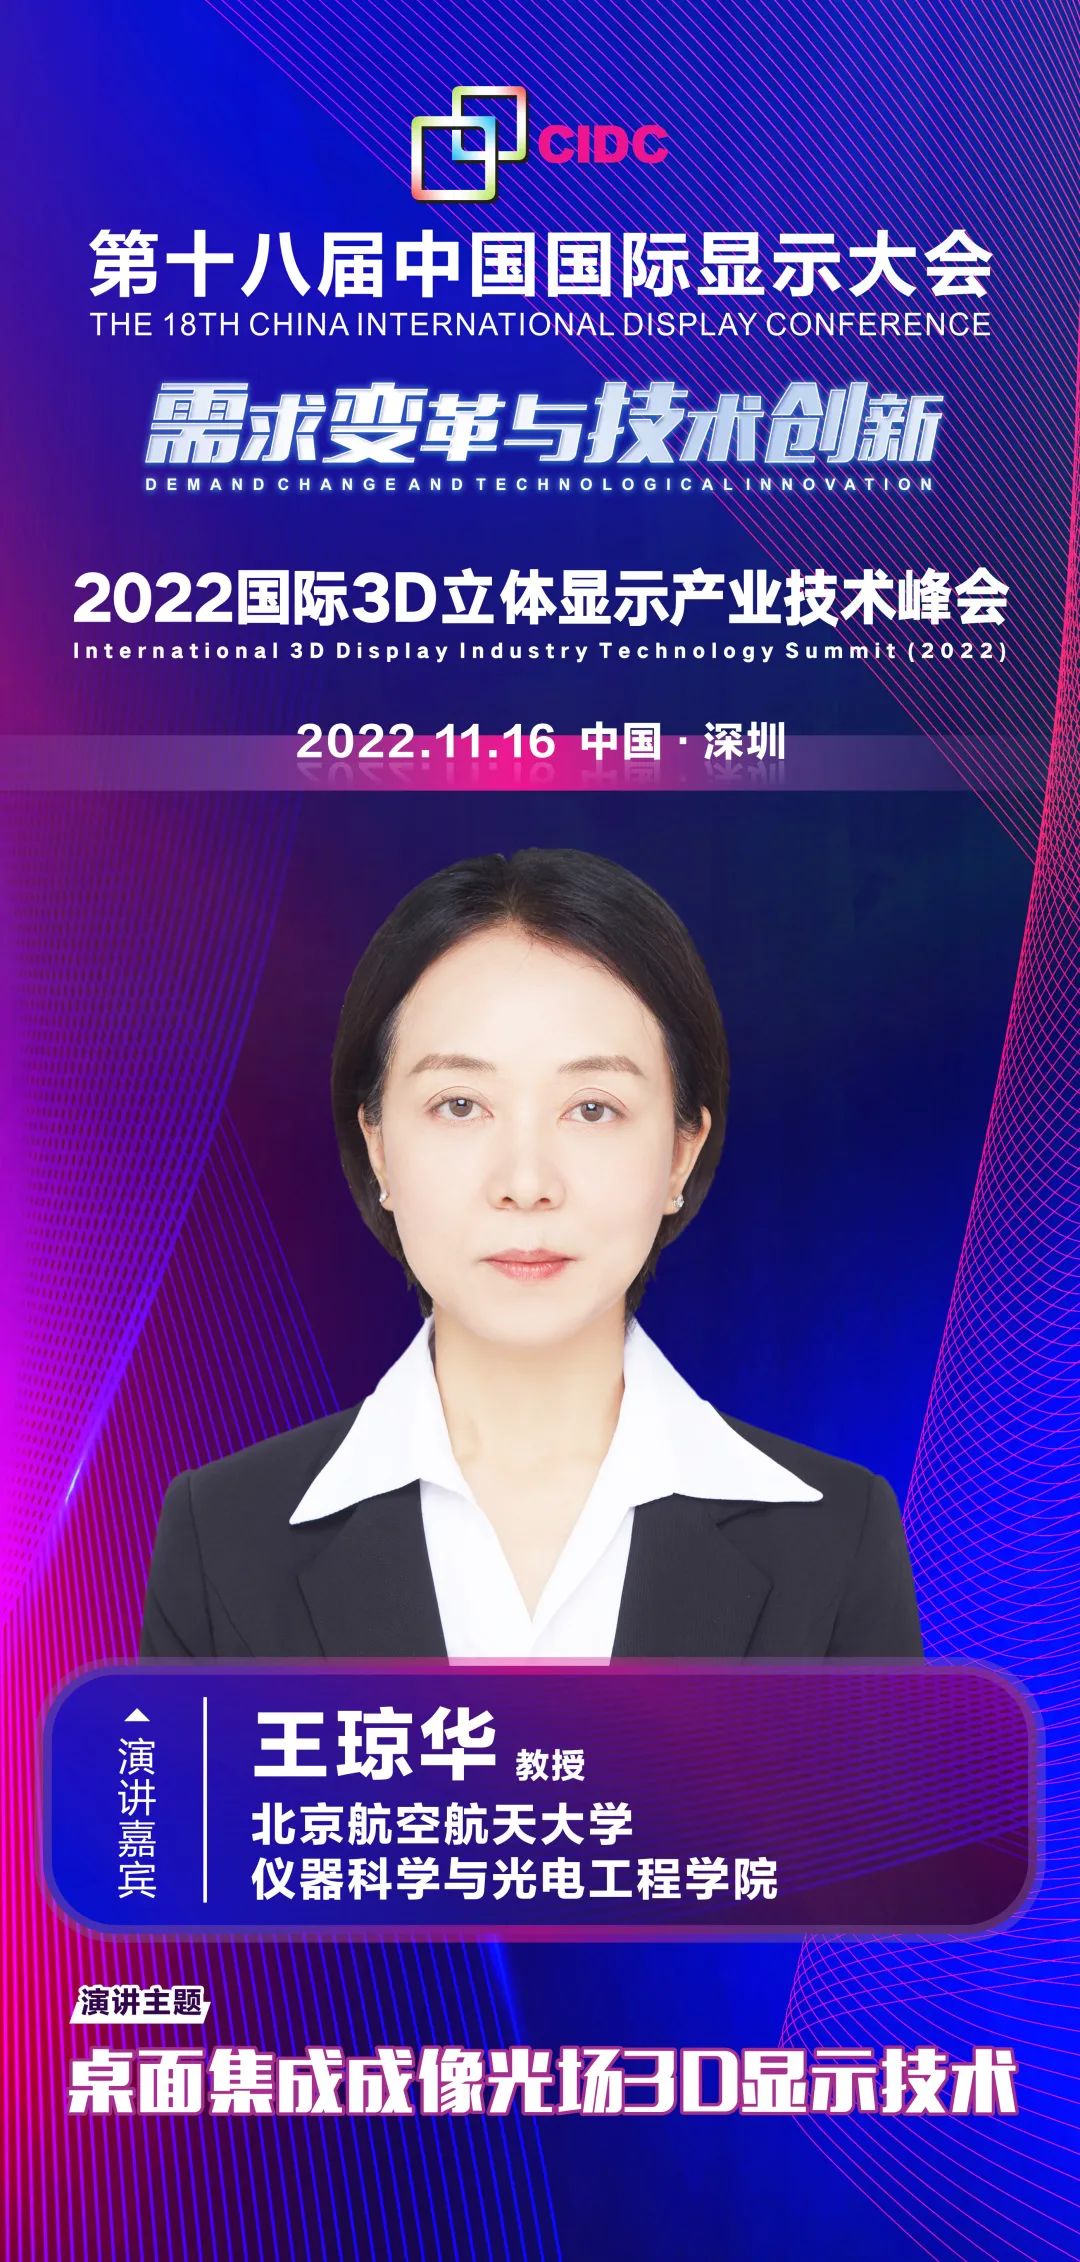 北京航空航天大学王琼华教授确认出席第十八届中国国际显示大会（CIDC2022）